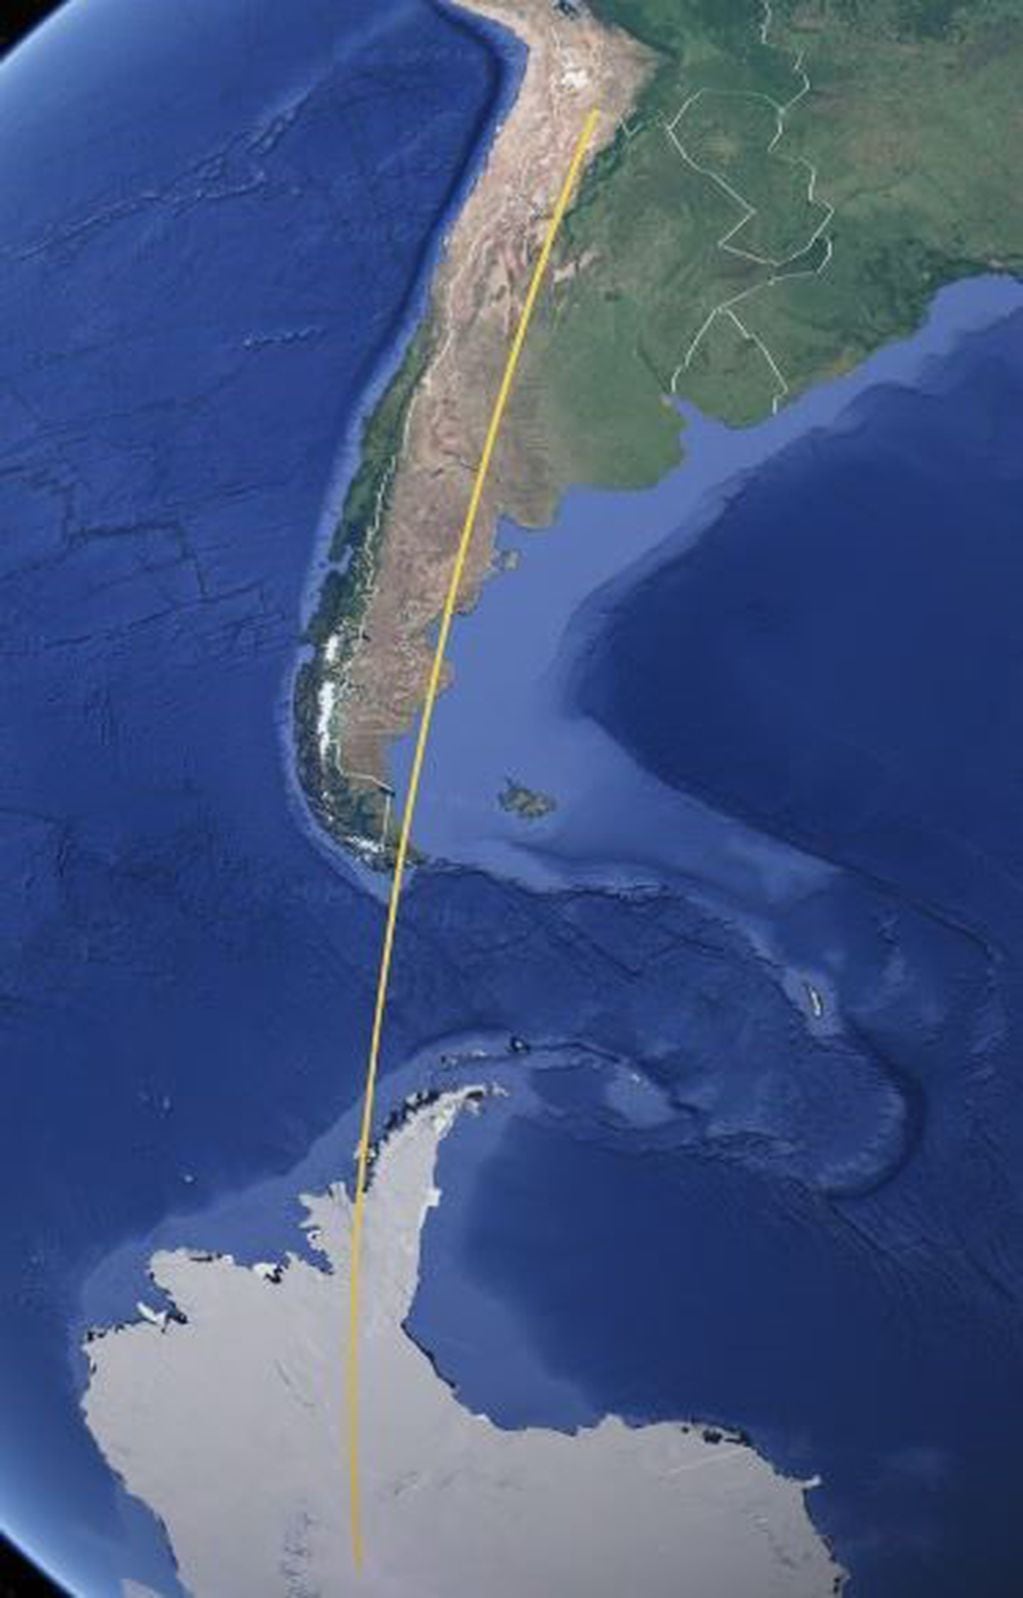 Trazado vertical norte sur territorio argentino.